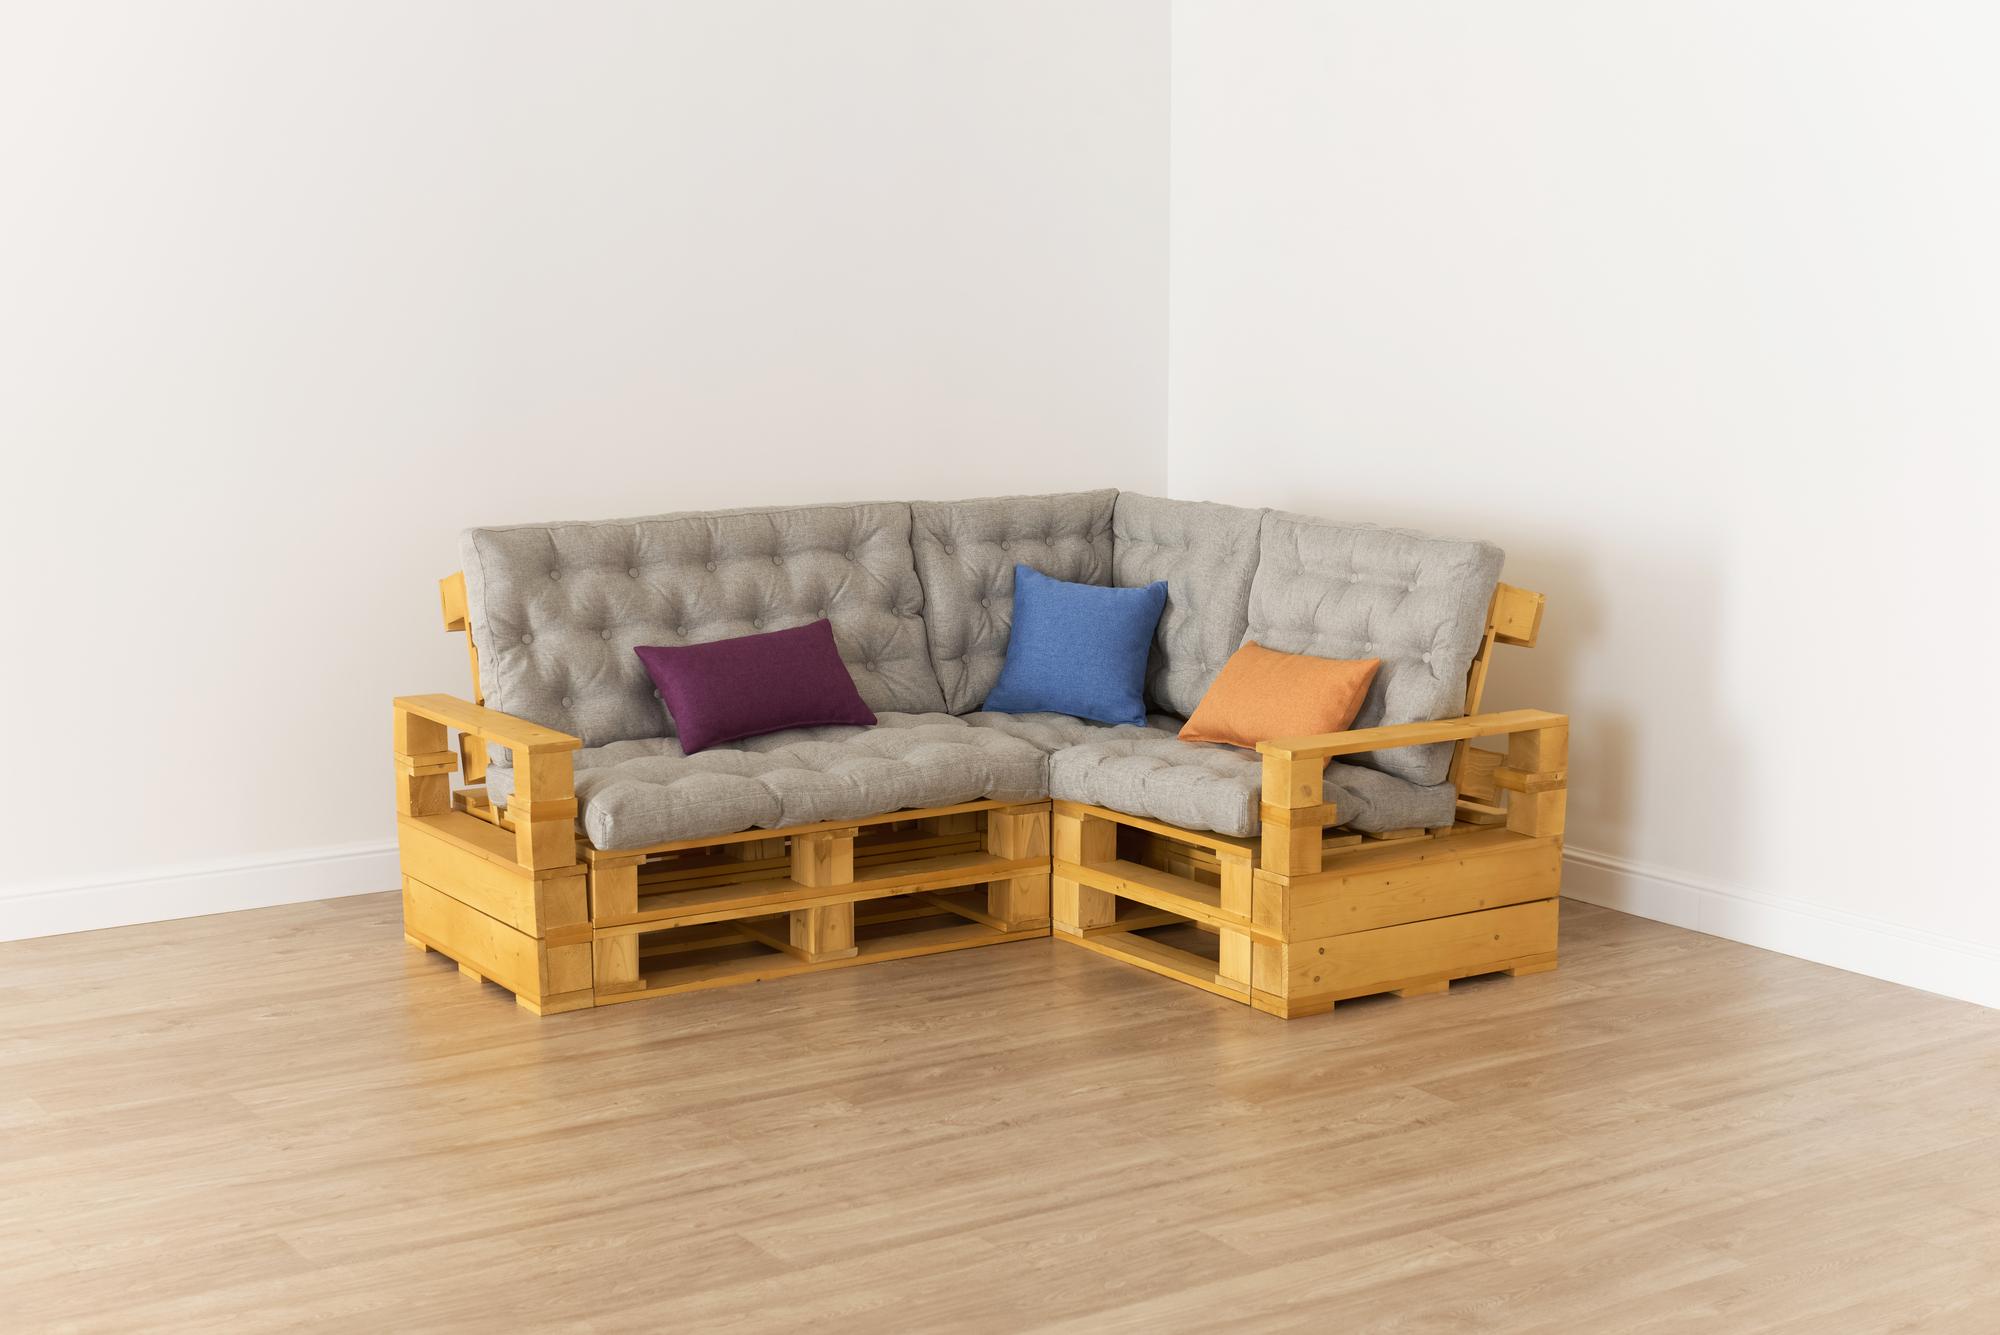 Купить Подлокотник + Диван 70 + угловой диван + диван 110 + подлокотник от производителя “Архитектория” фото №1